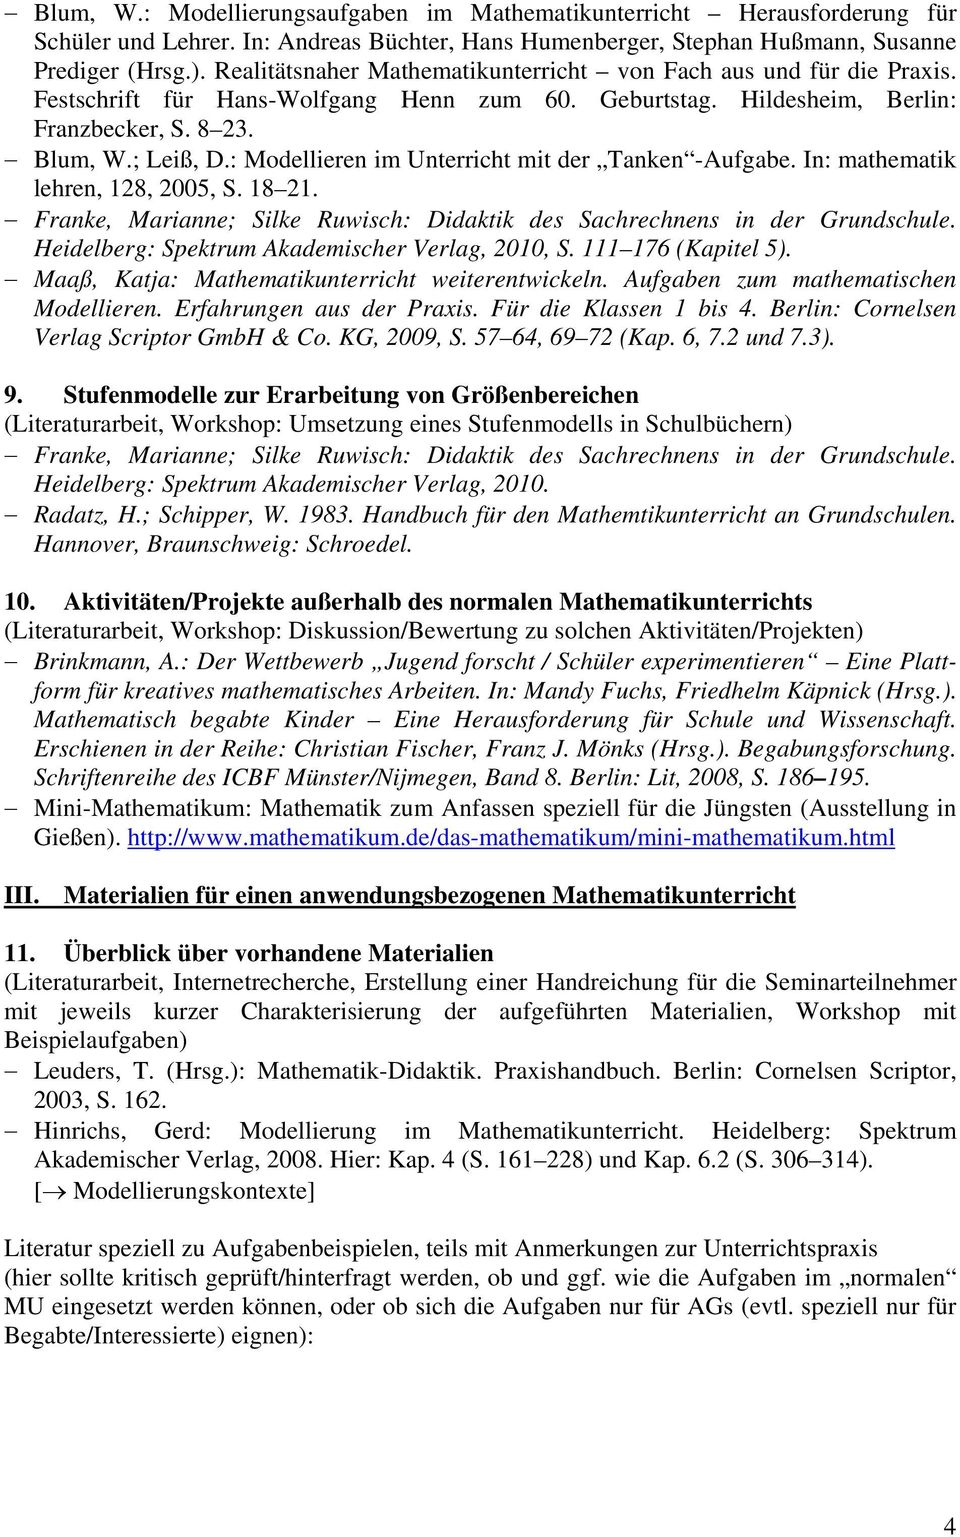 : Modellieren im Unterricht mit der Tanken -Aufgabe. In: mathematik lehren, 128, 2005, S. 18 21. Heidelberg: Spektrum Akademischer Verlag, 2010, S. 111 176 (Kapitel 5). Verlag Scriptor GmbH & Co.